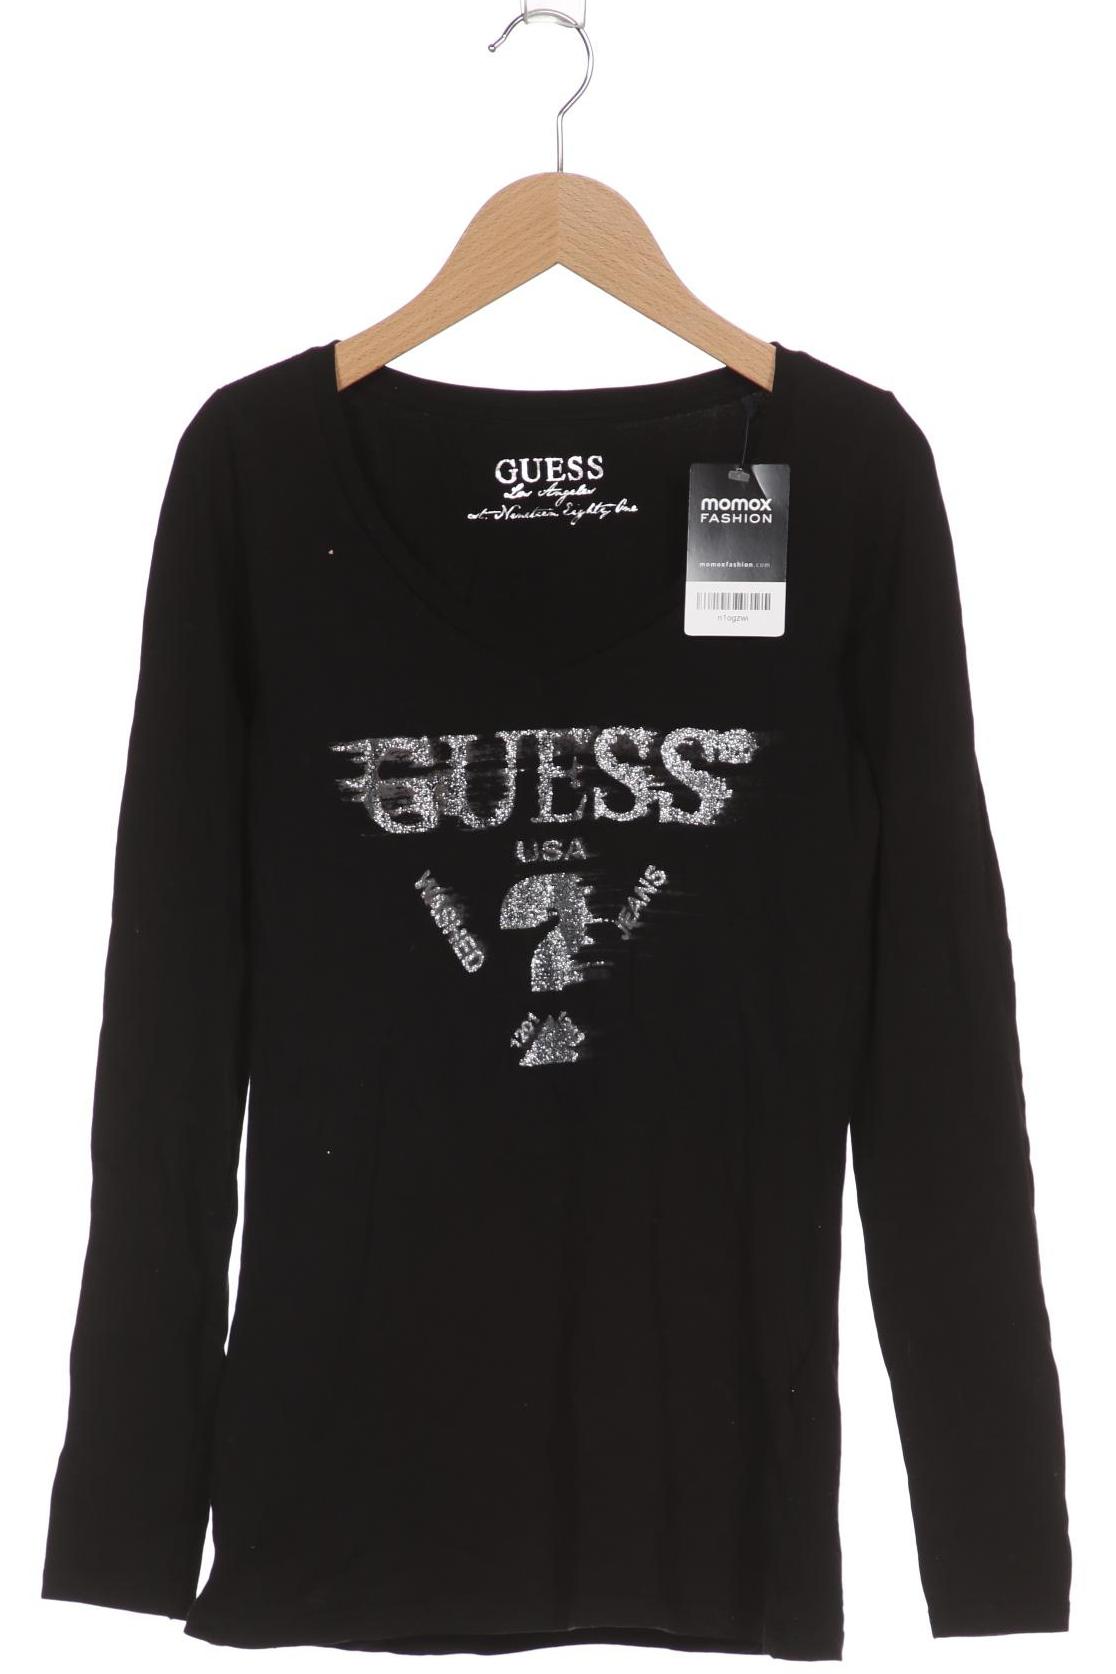 Guess Damen Langarmshirt, schwarz, Gr. 38 von Guess